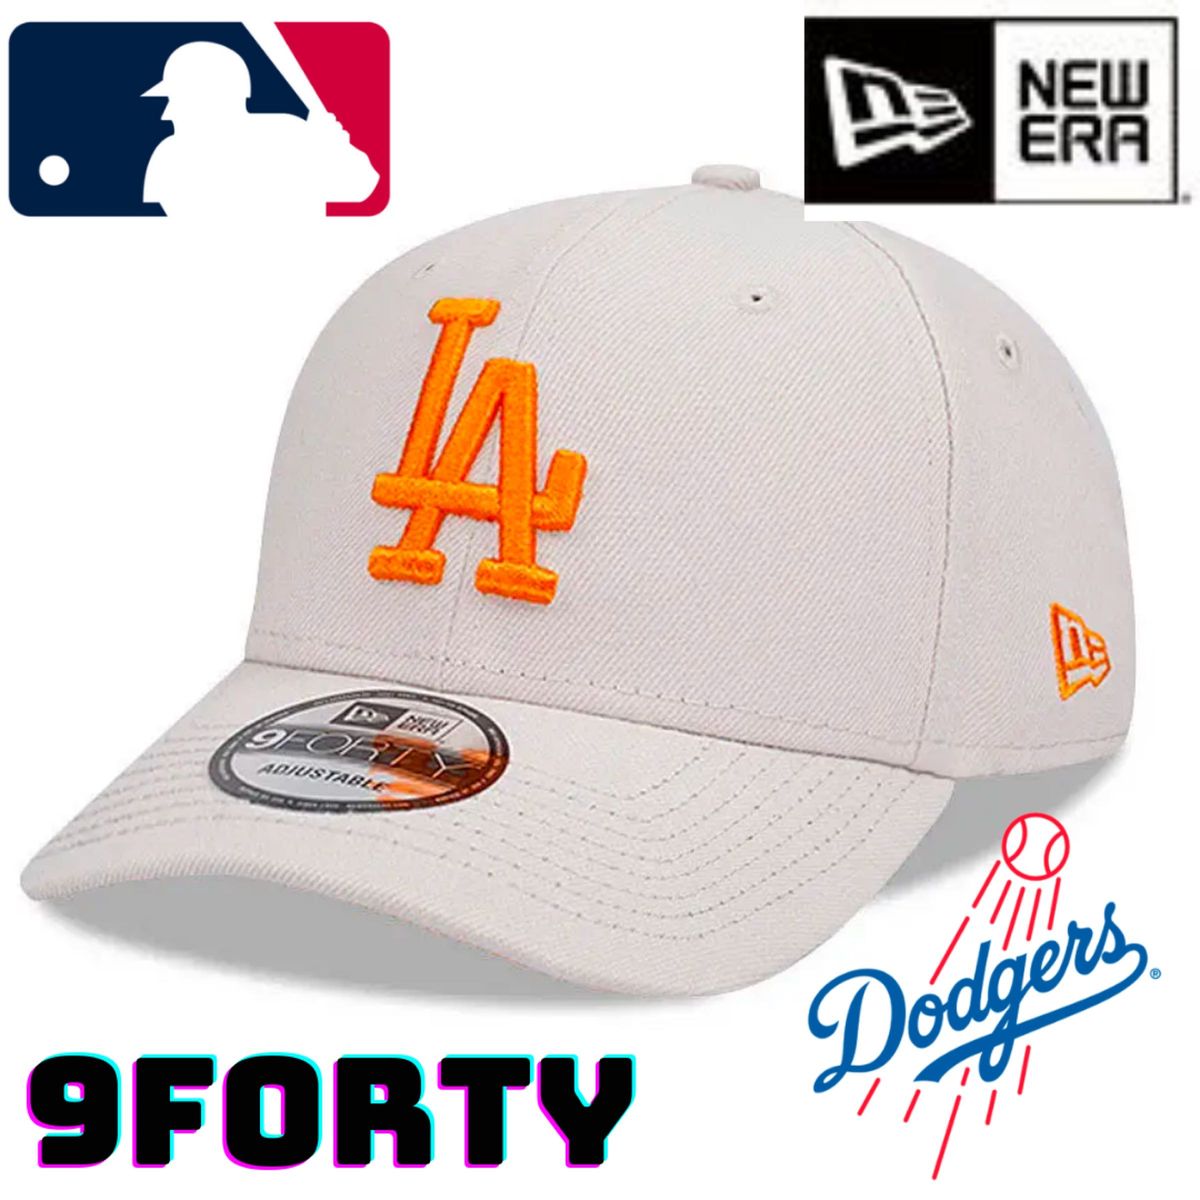 【海外限定】ニューエラ ロサンゼルスドジャース 9FORTY ストーンオレンジ NEW ERA MLB Dodgers ベージュ